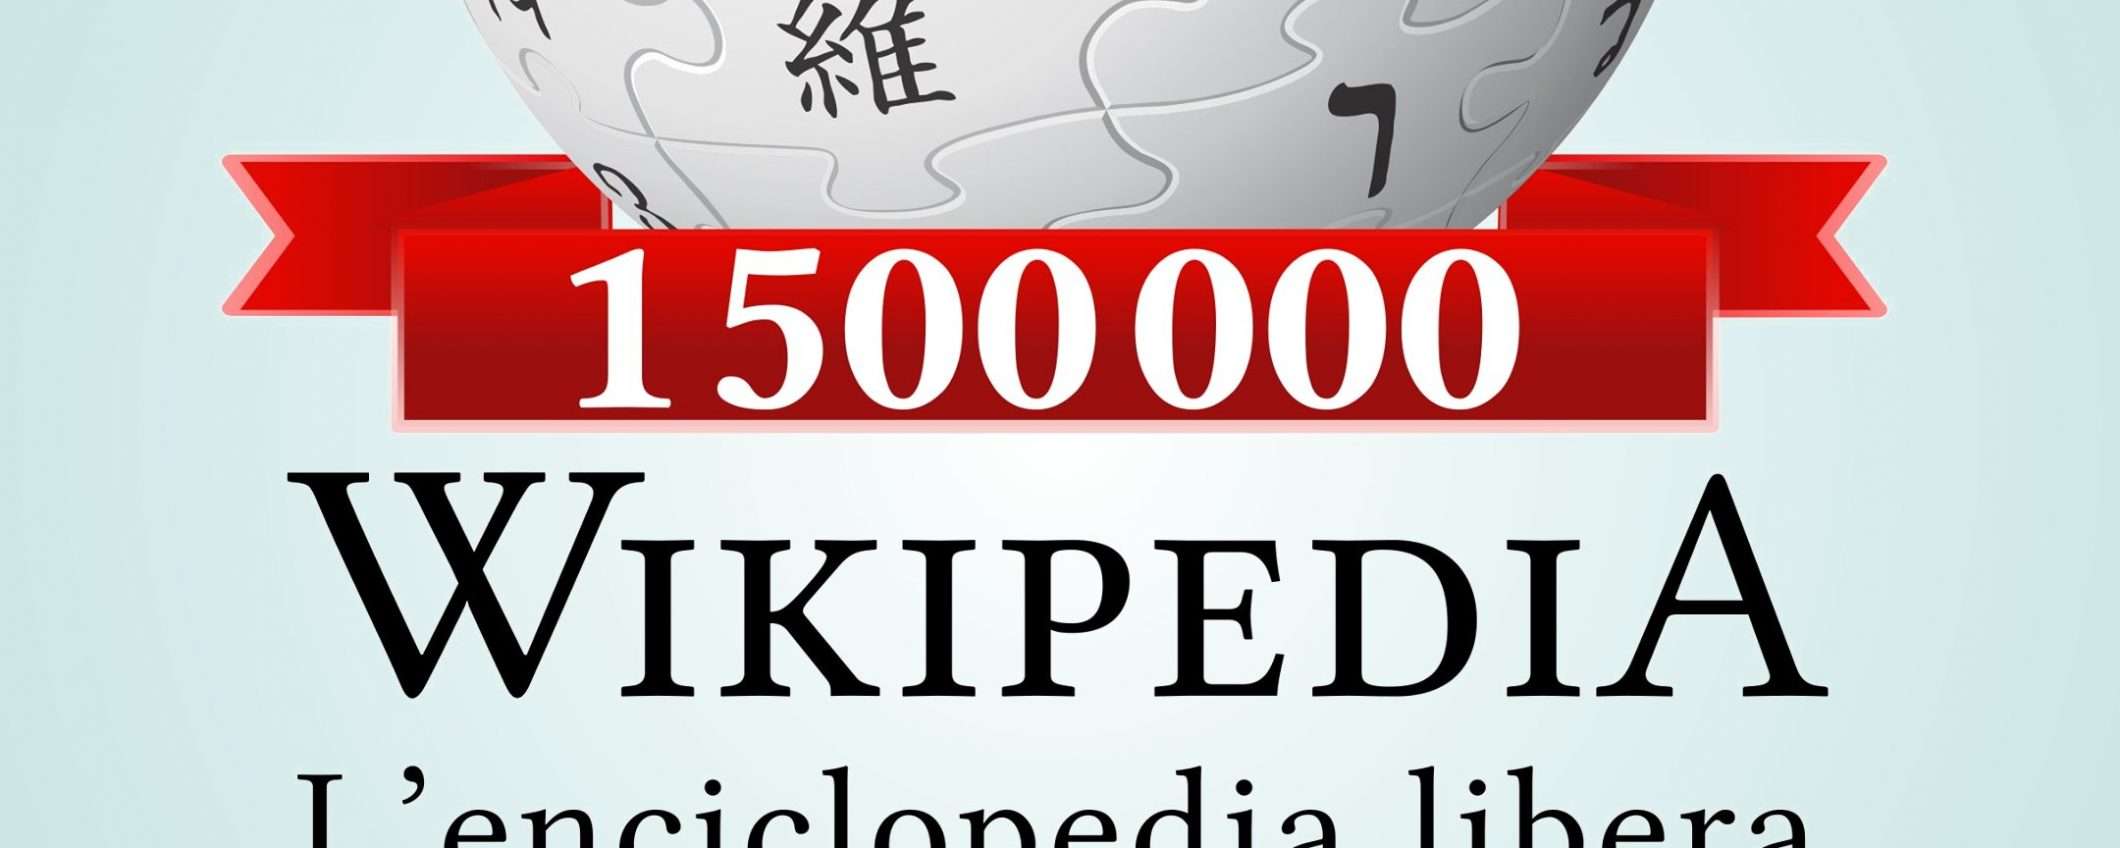 Wikipedia in italiano, oltre 1,5 milioni di voci